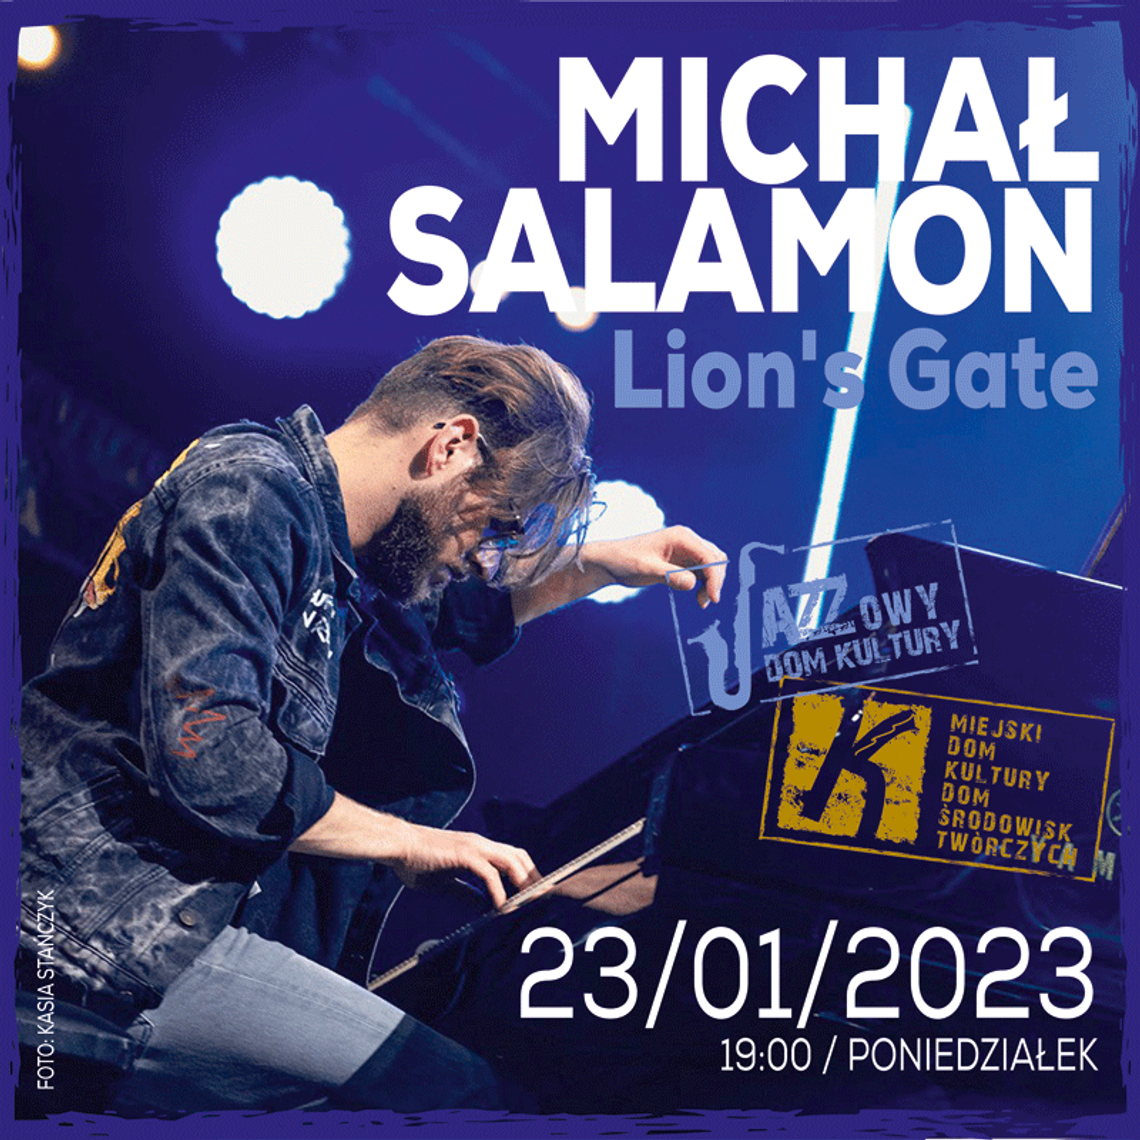 MICHAŁ SALAMON – Lion’s Gate w ramach Jazzowy Dom Kultury